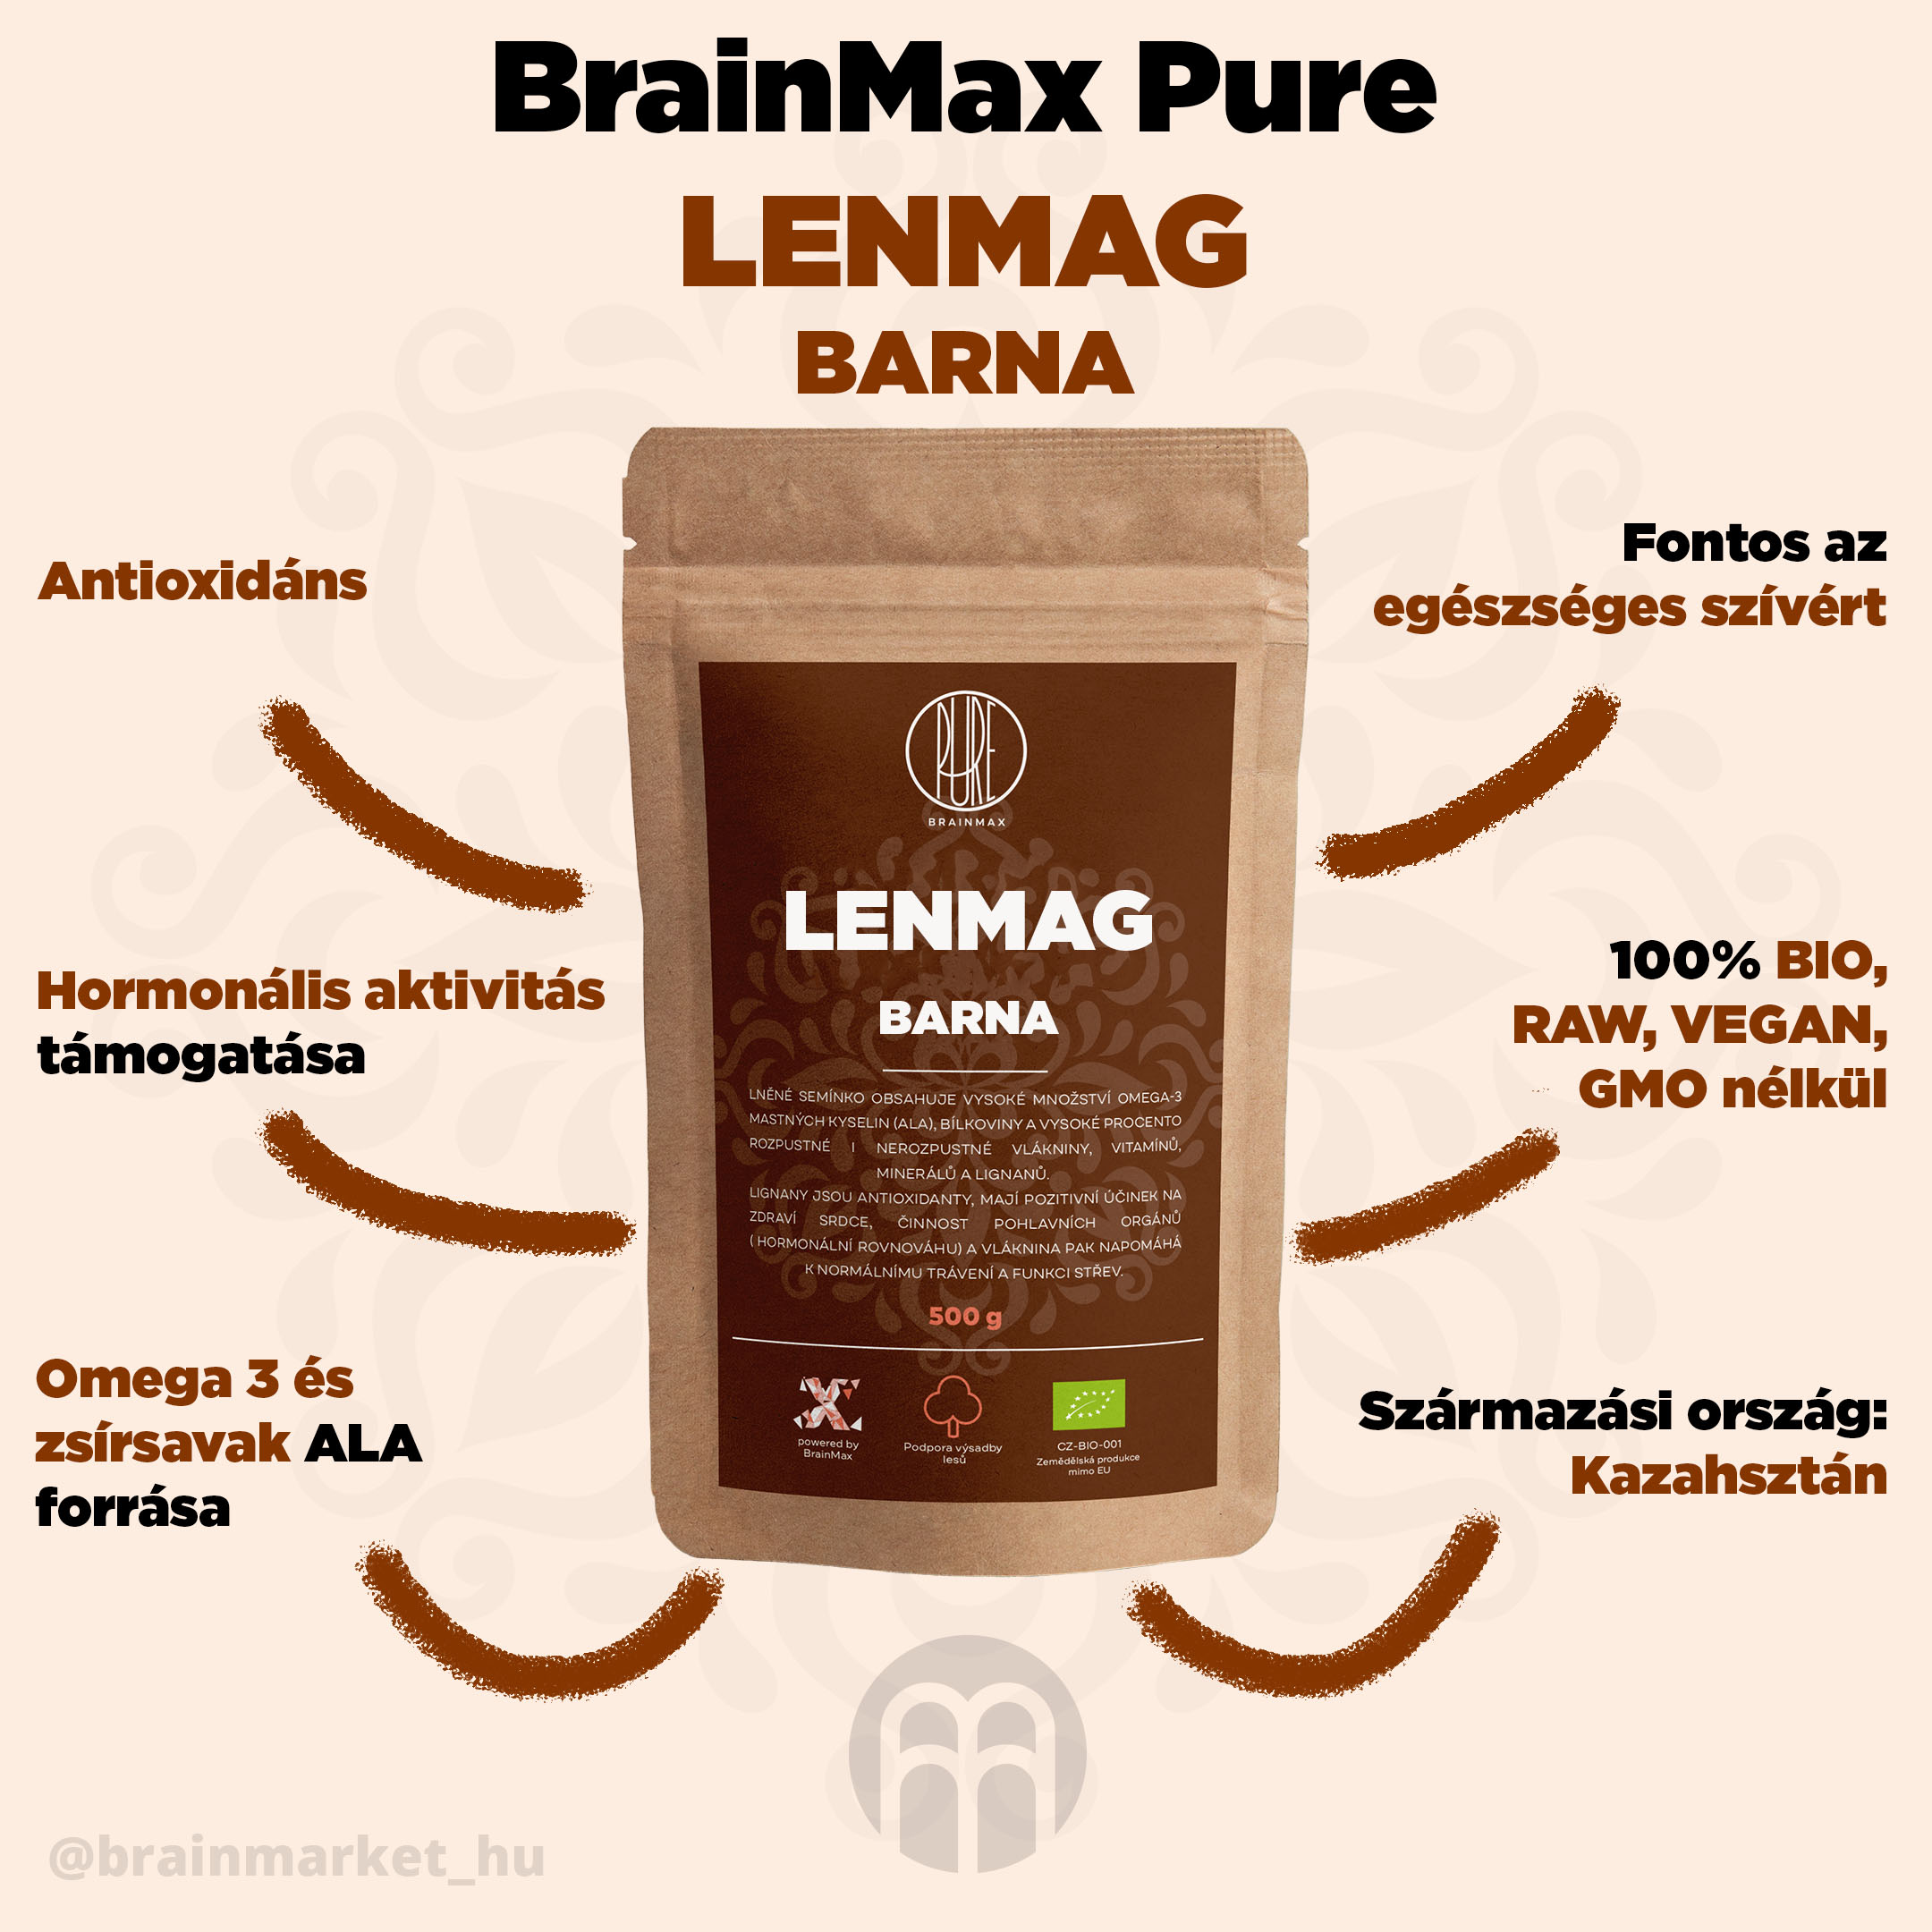 BrainMax tiszta lenmag (barna) BIO, 500 g